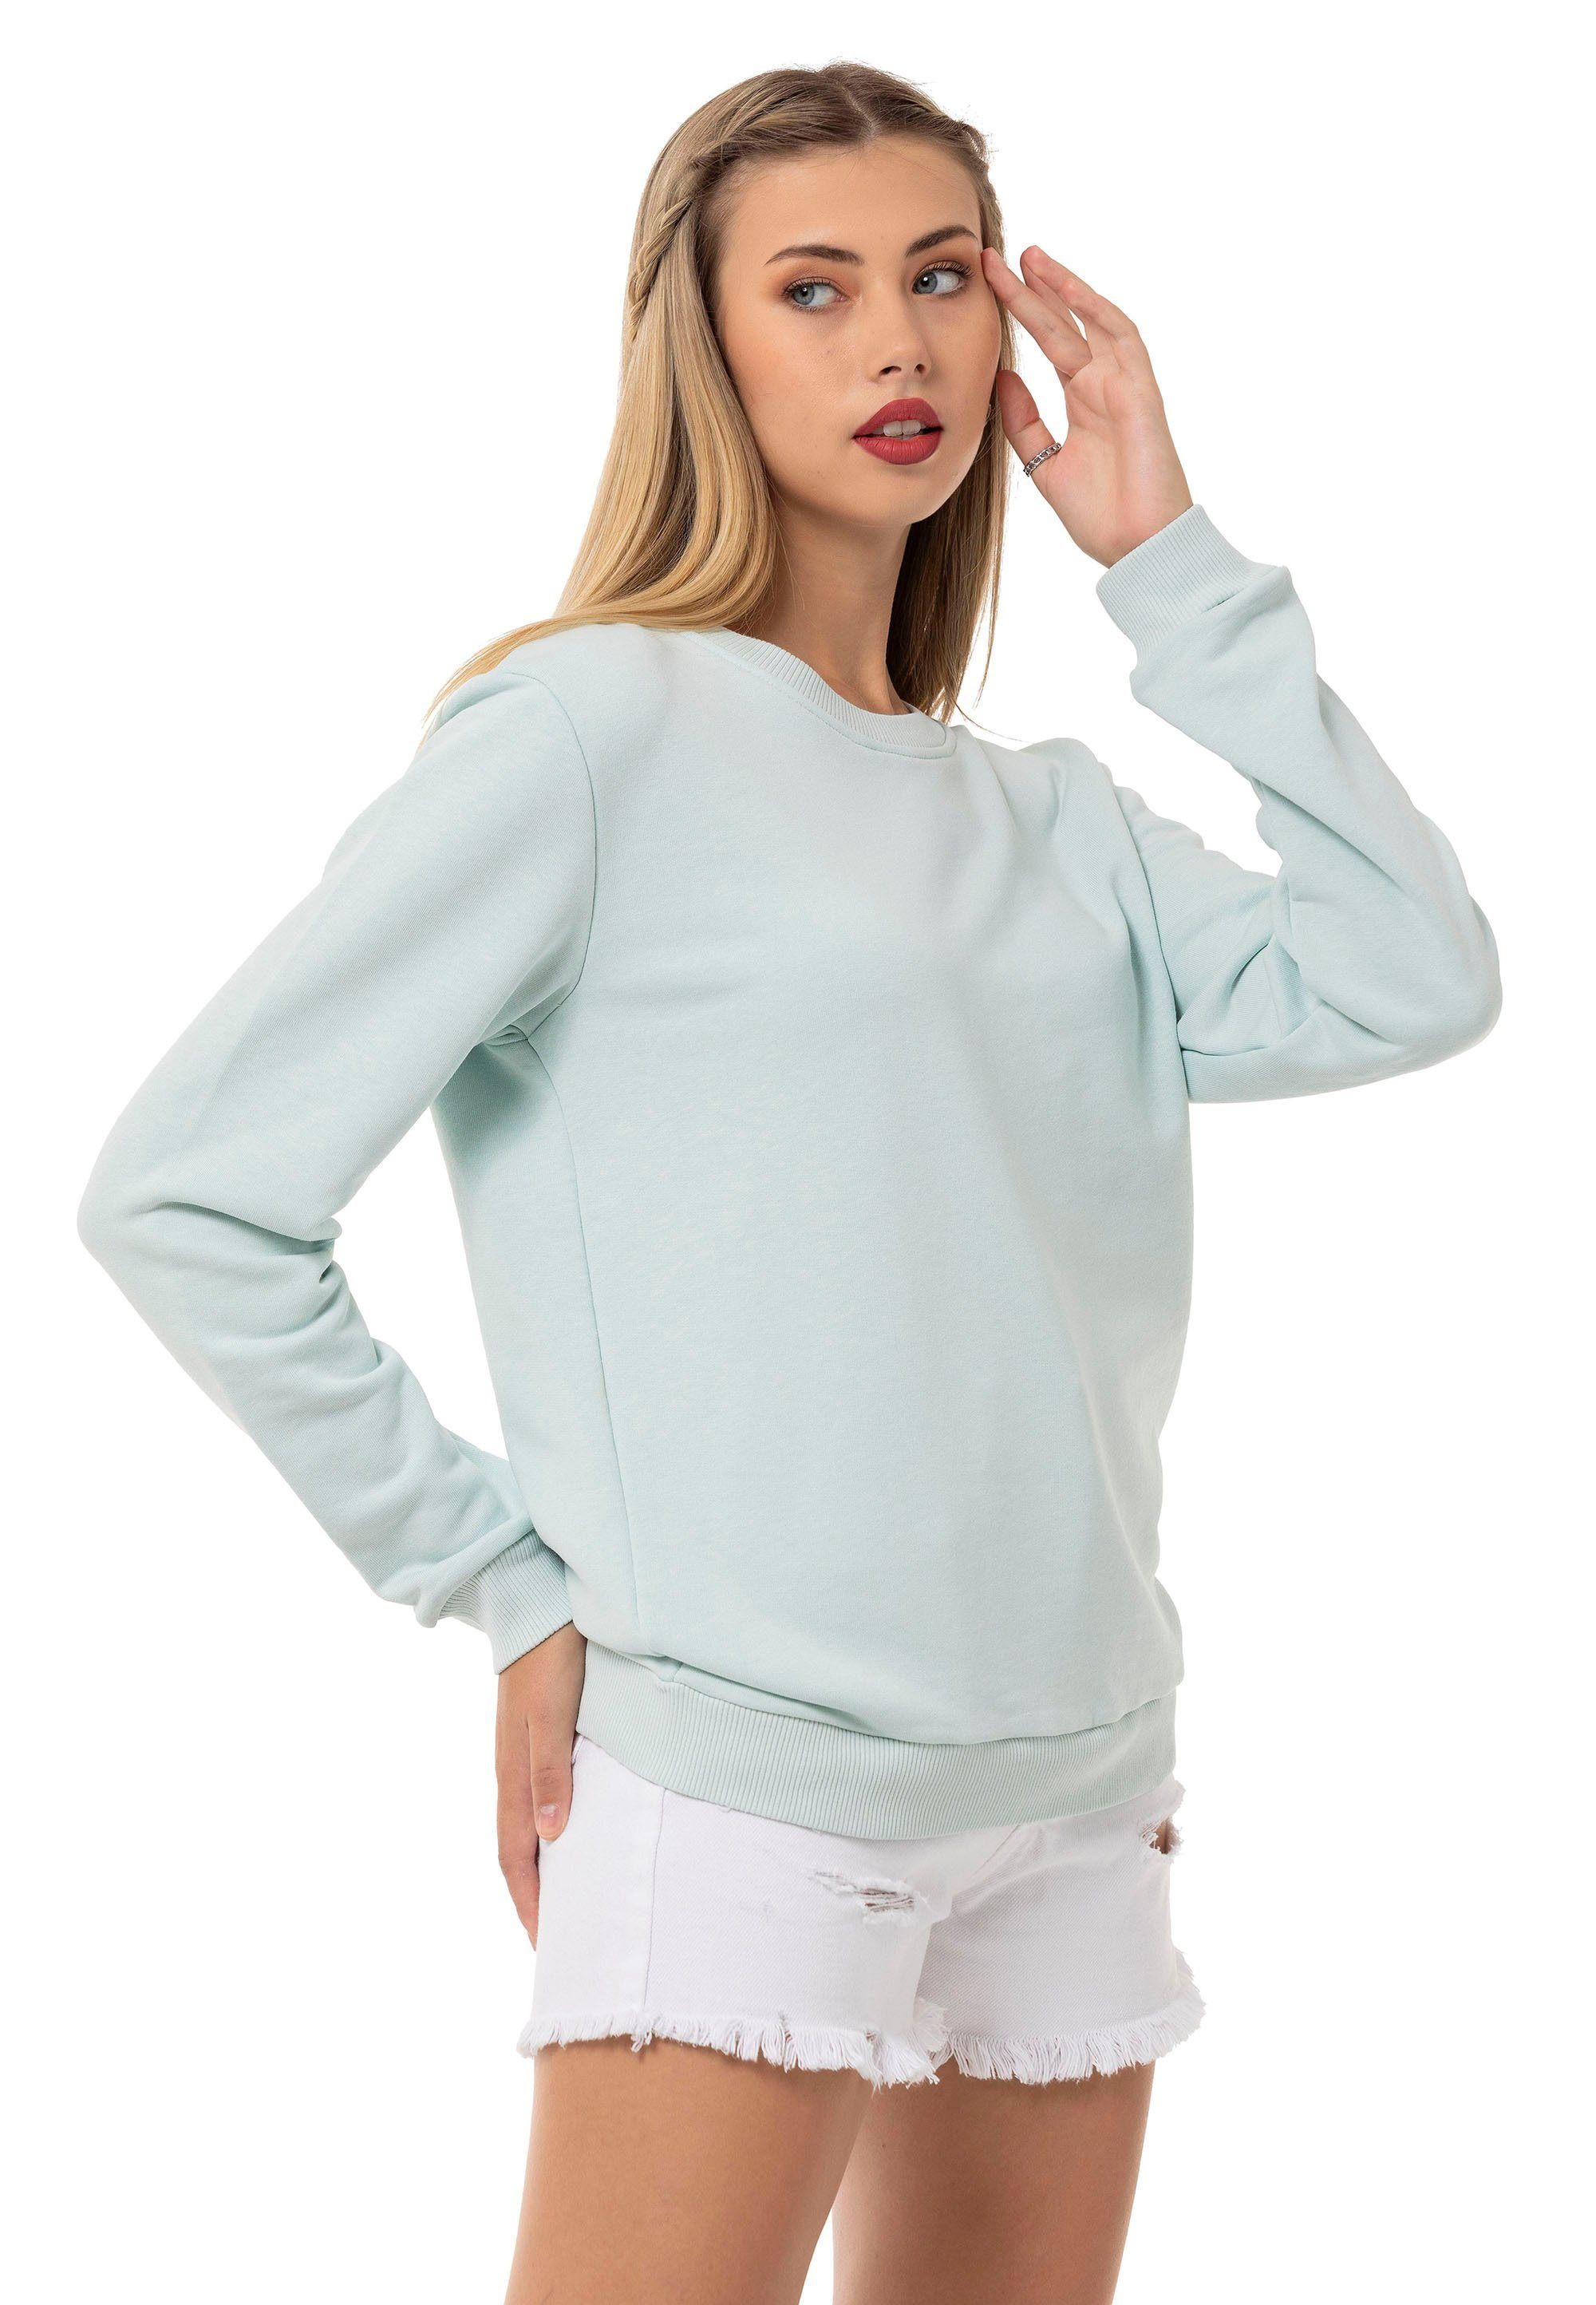 Mint Pullover Sweatshirt Premium Qualität Rundhals RedBridge